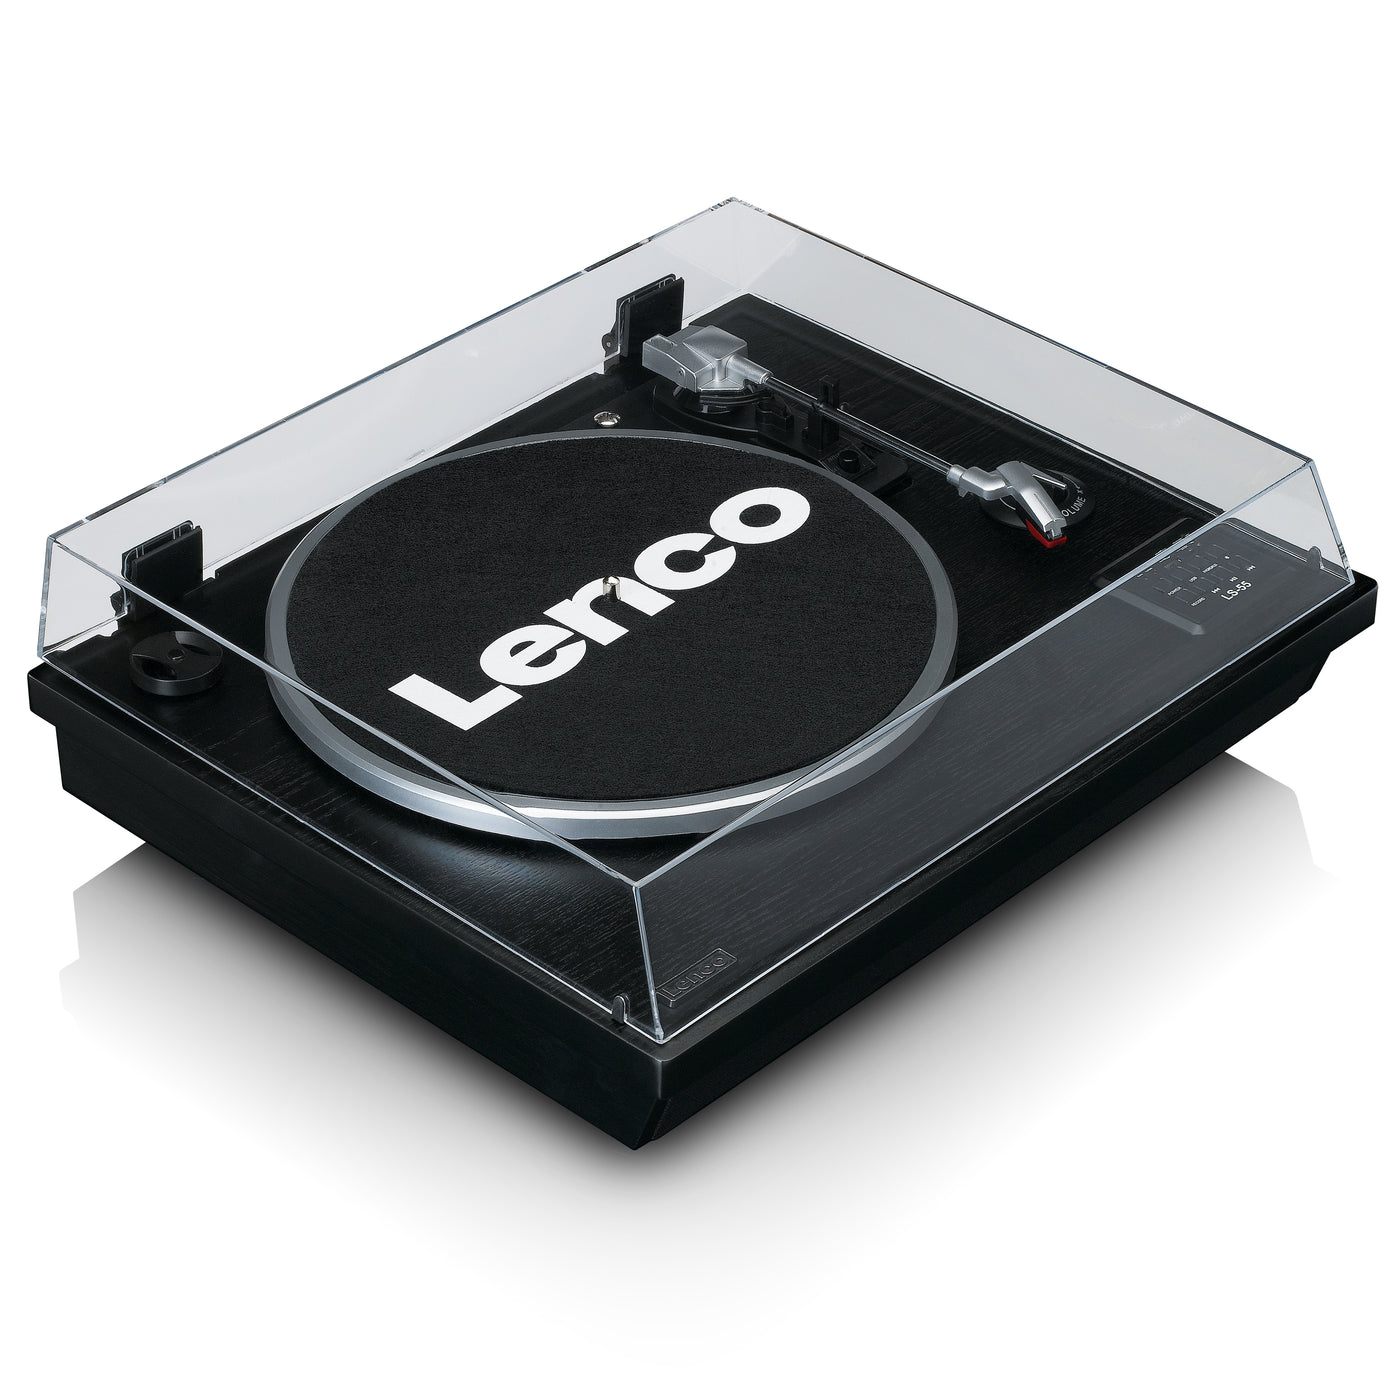 LENCO LS-55BK - Gramofon z Bluetooth®, koderem USB MP3, głośnikami - Czarny